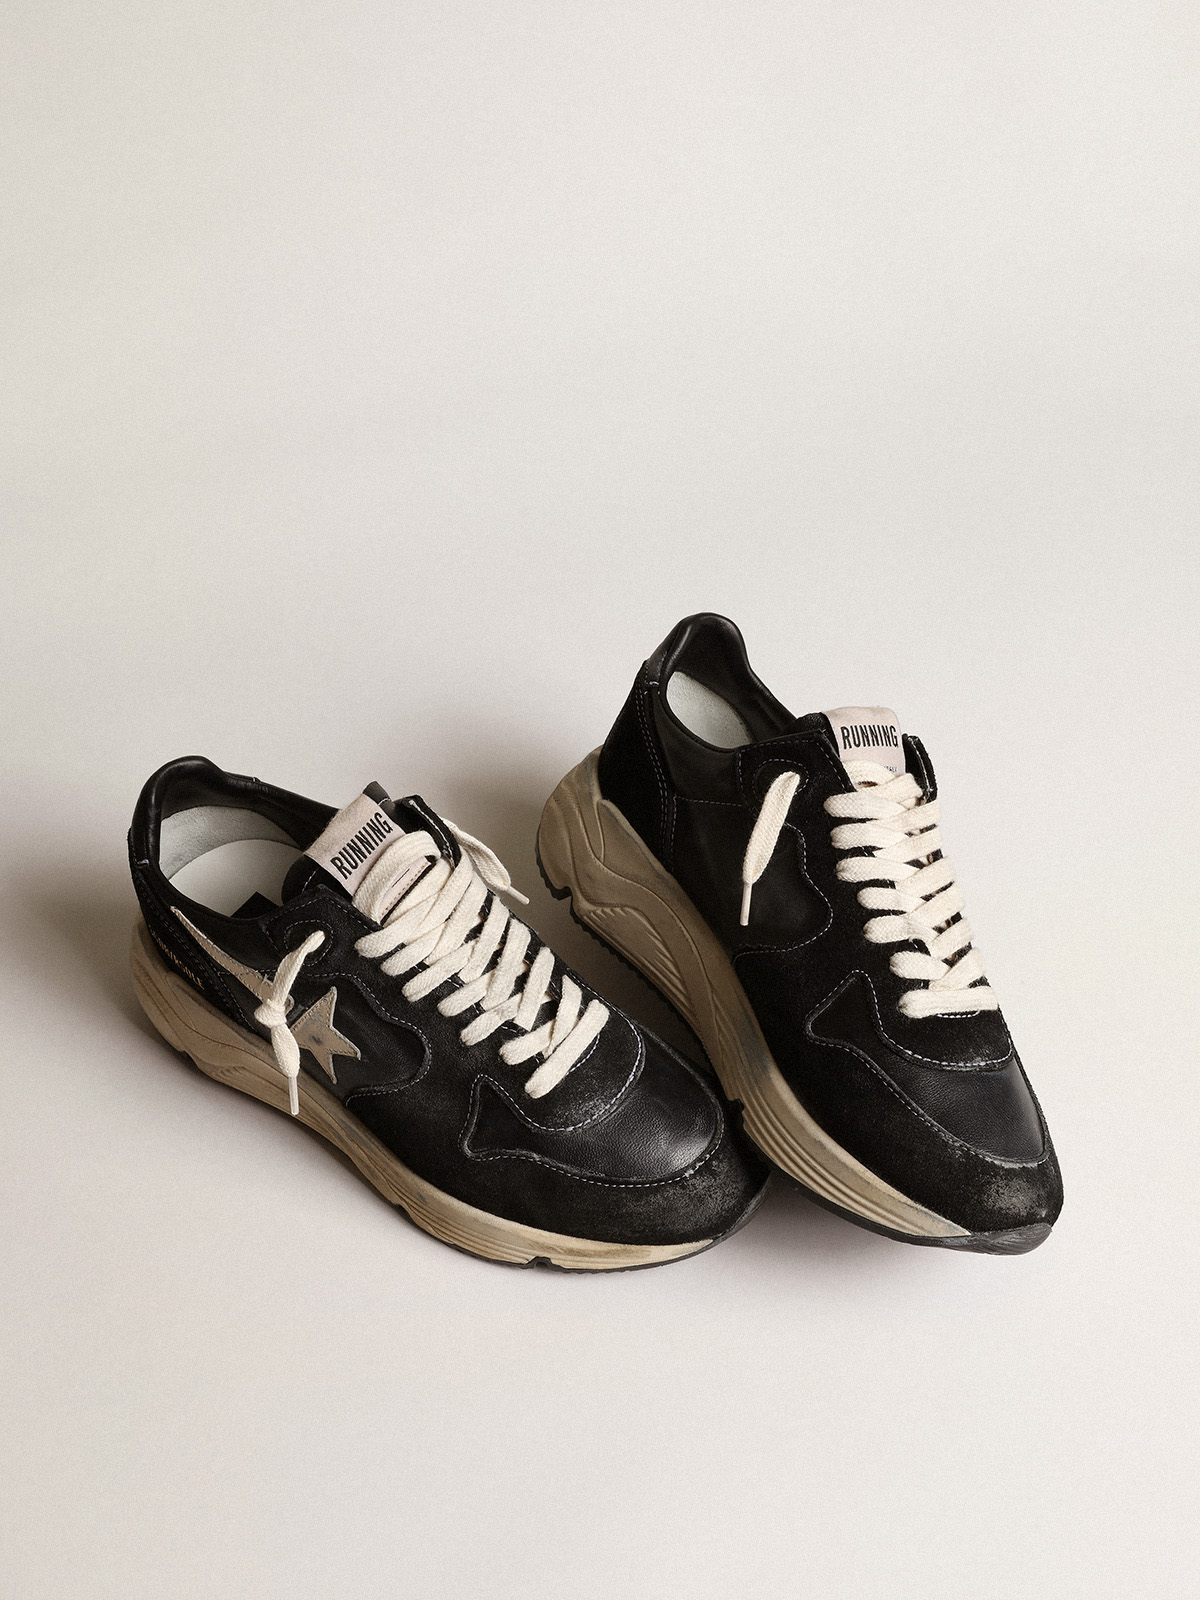 GOLDEN GOOSE Sneaker Running in Black/White 40